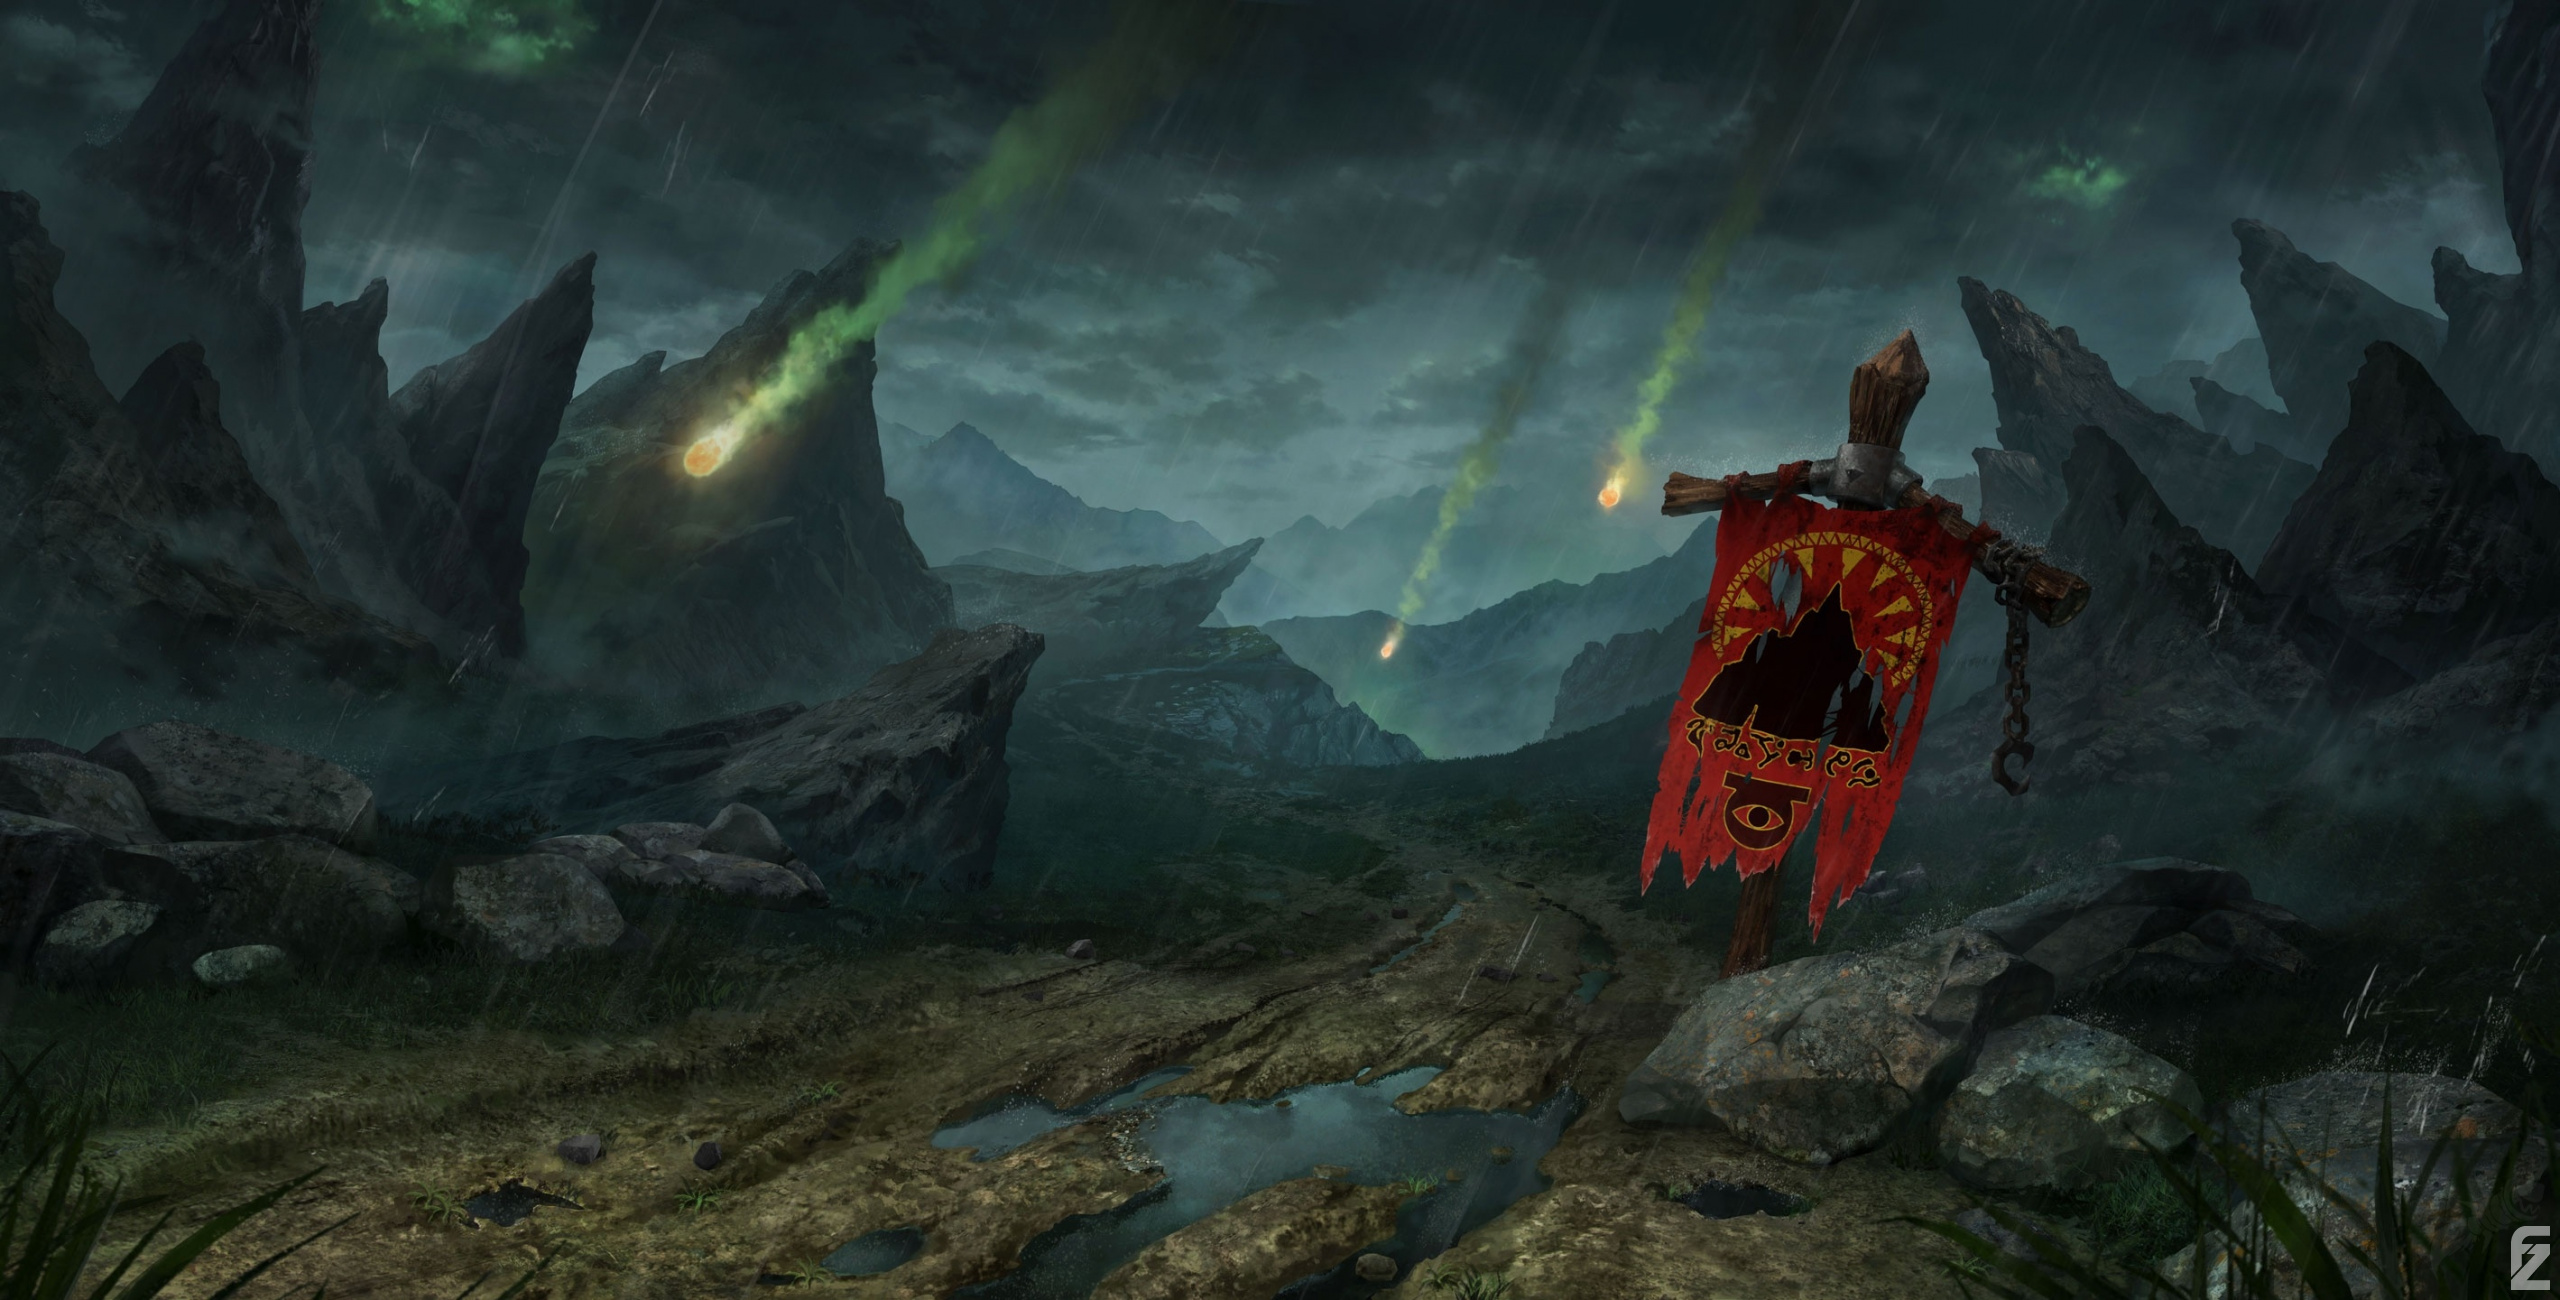 General 2560x1300 Warcraft III: Reforged Blizzard Entertainment Warcraft digital art